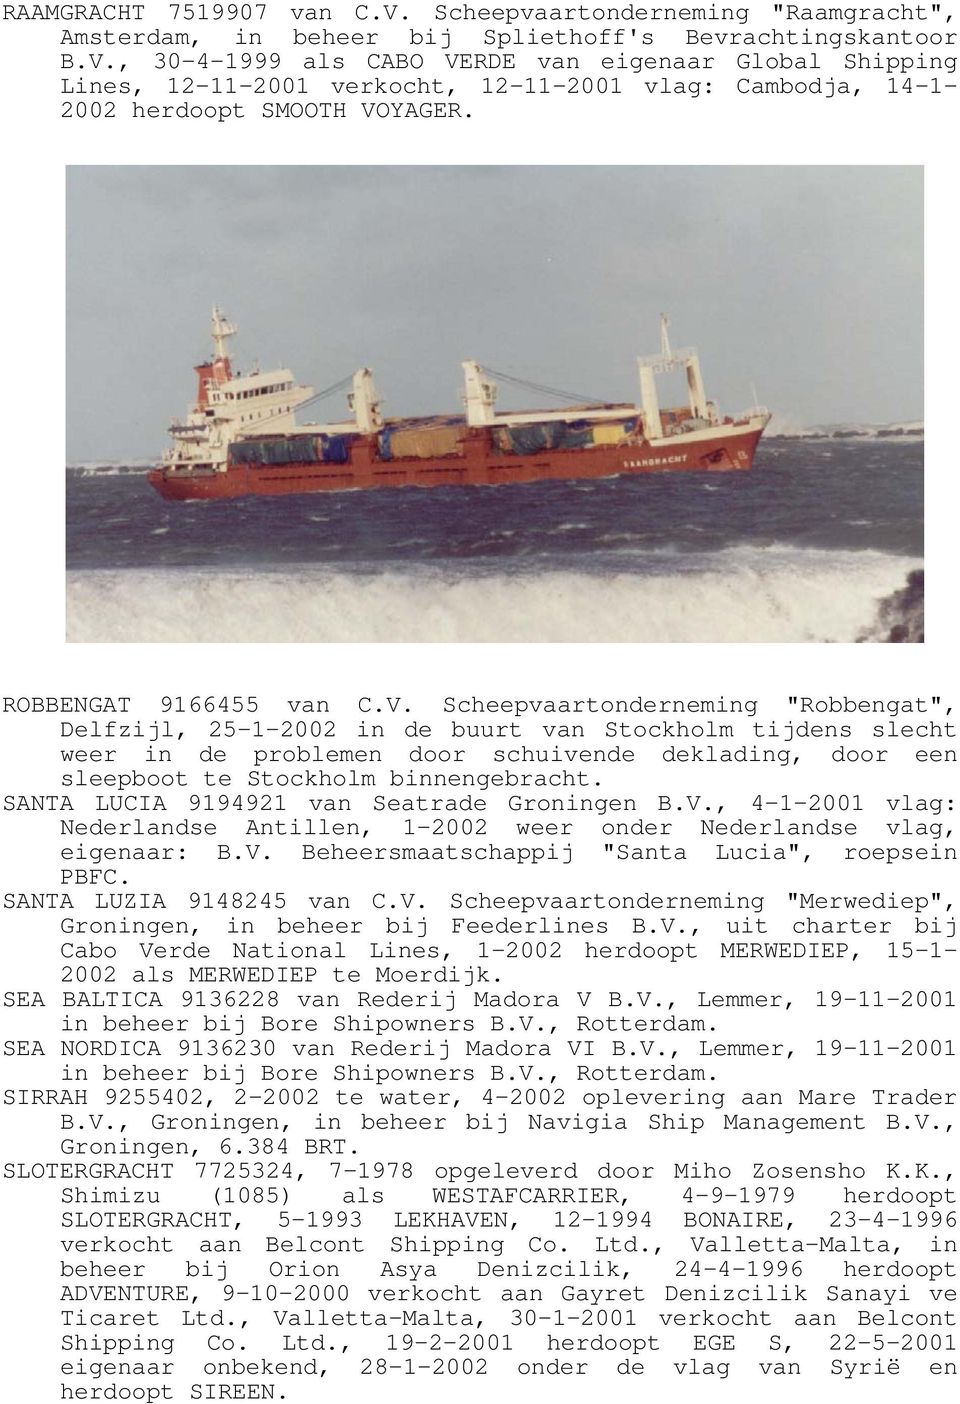 Scheepvaartonderneming "Robbengat", Delfzijl, 25-1-2002 in de buurt van Stockholm tijdens slecht weer in de problemen door schuivende deklading, door een sleepboot te Stockholm binnengebracht.